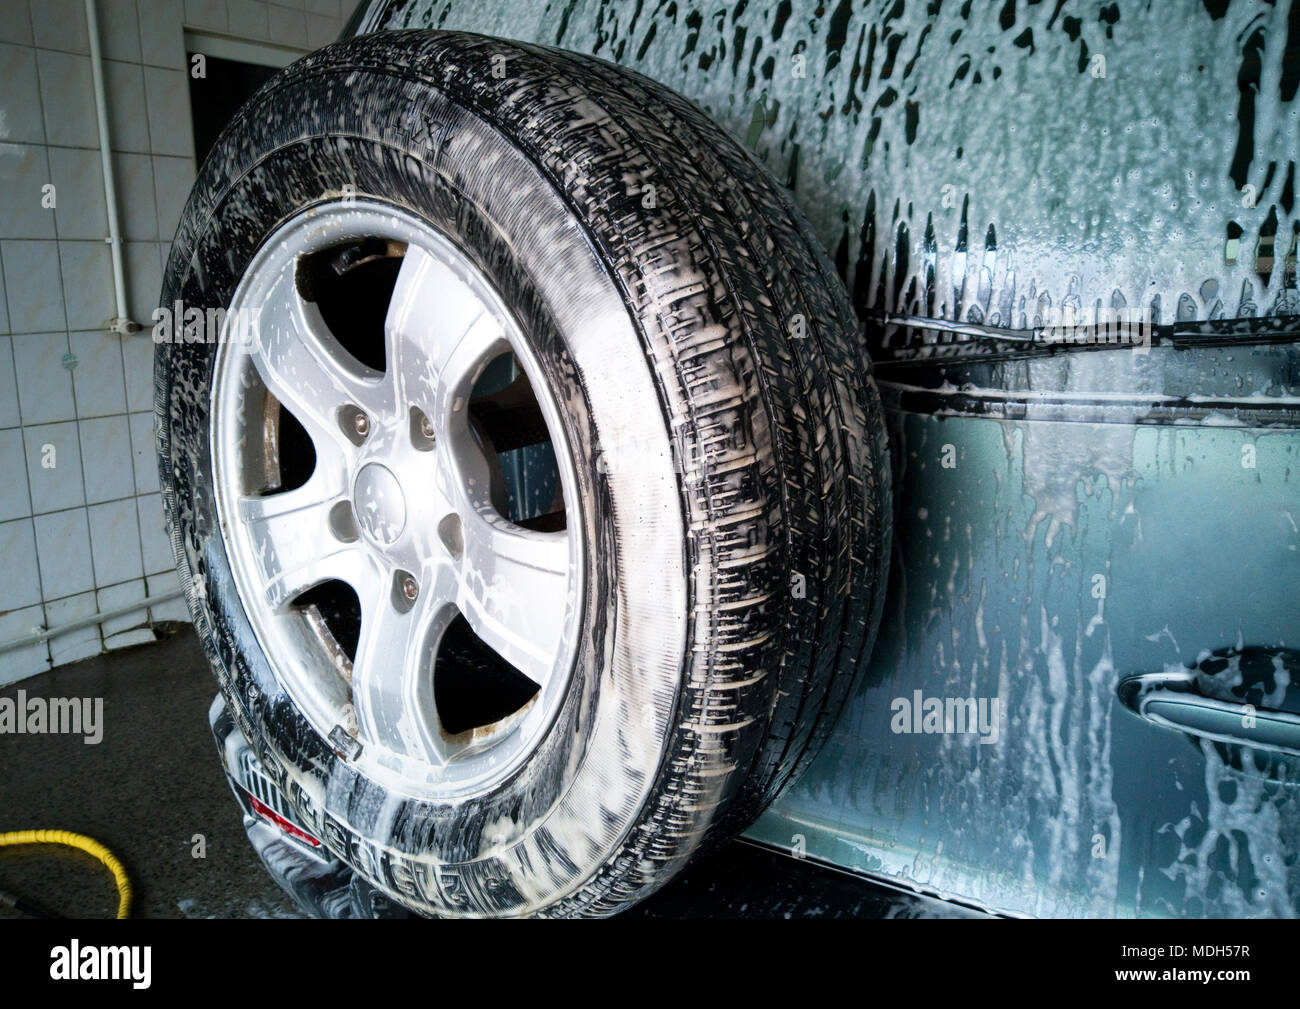 Auto waschen. Reinigung modernes Auto von Schaum bedeckt Stockfotografie -  Alamy